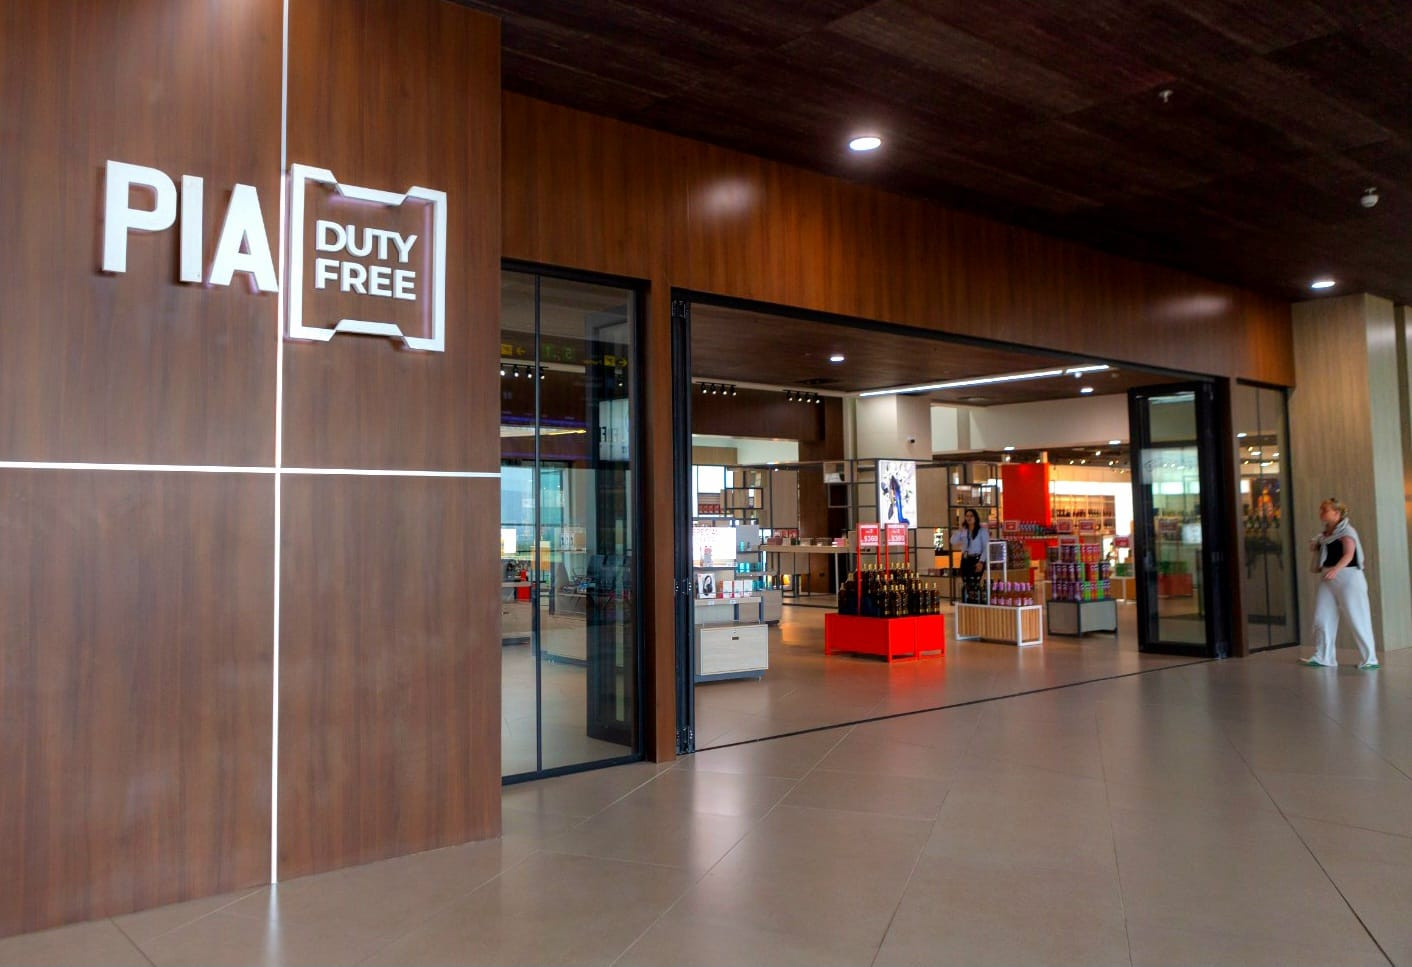 Servicios-Aeropuerto-Comayagua-Honduras-Palmerola-Las tiendas PIA DUTY FREE son la nueva sensación del Aeropuerto Internacional de Palmerola